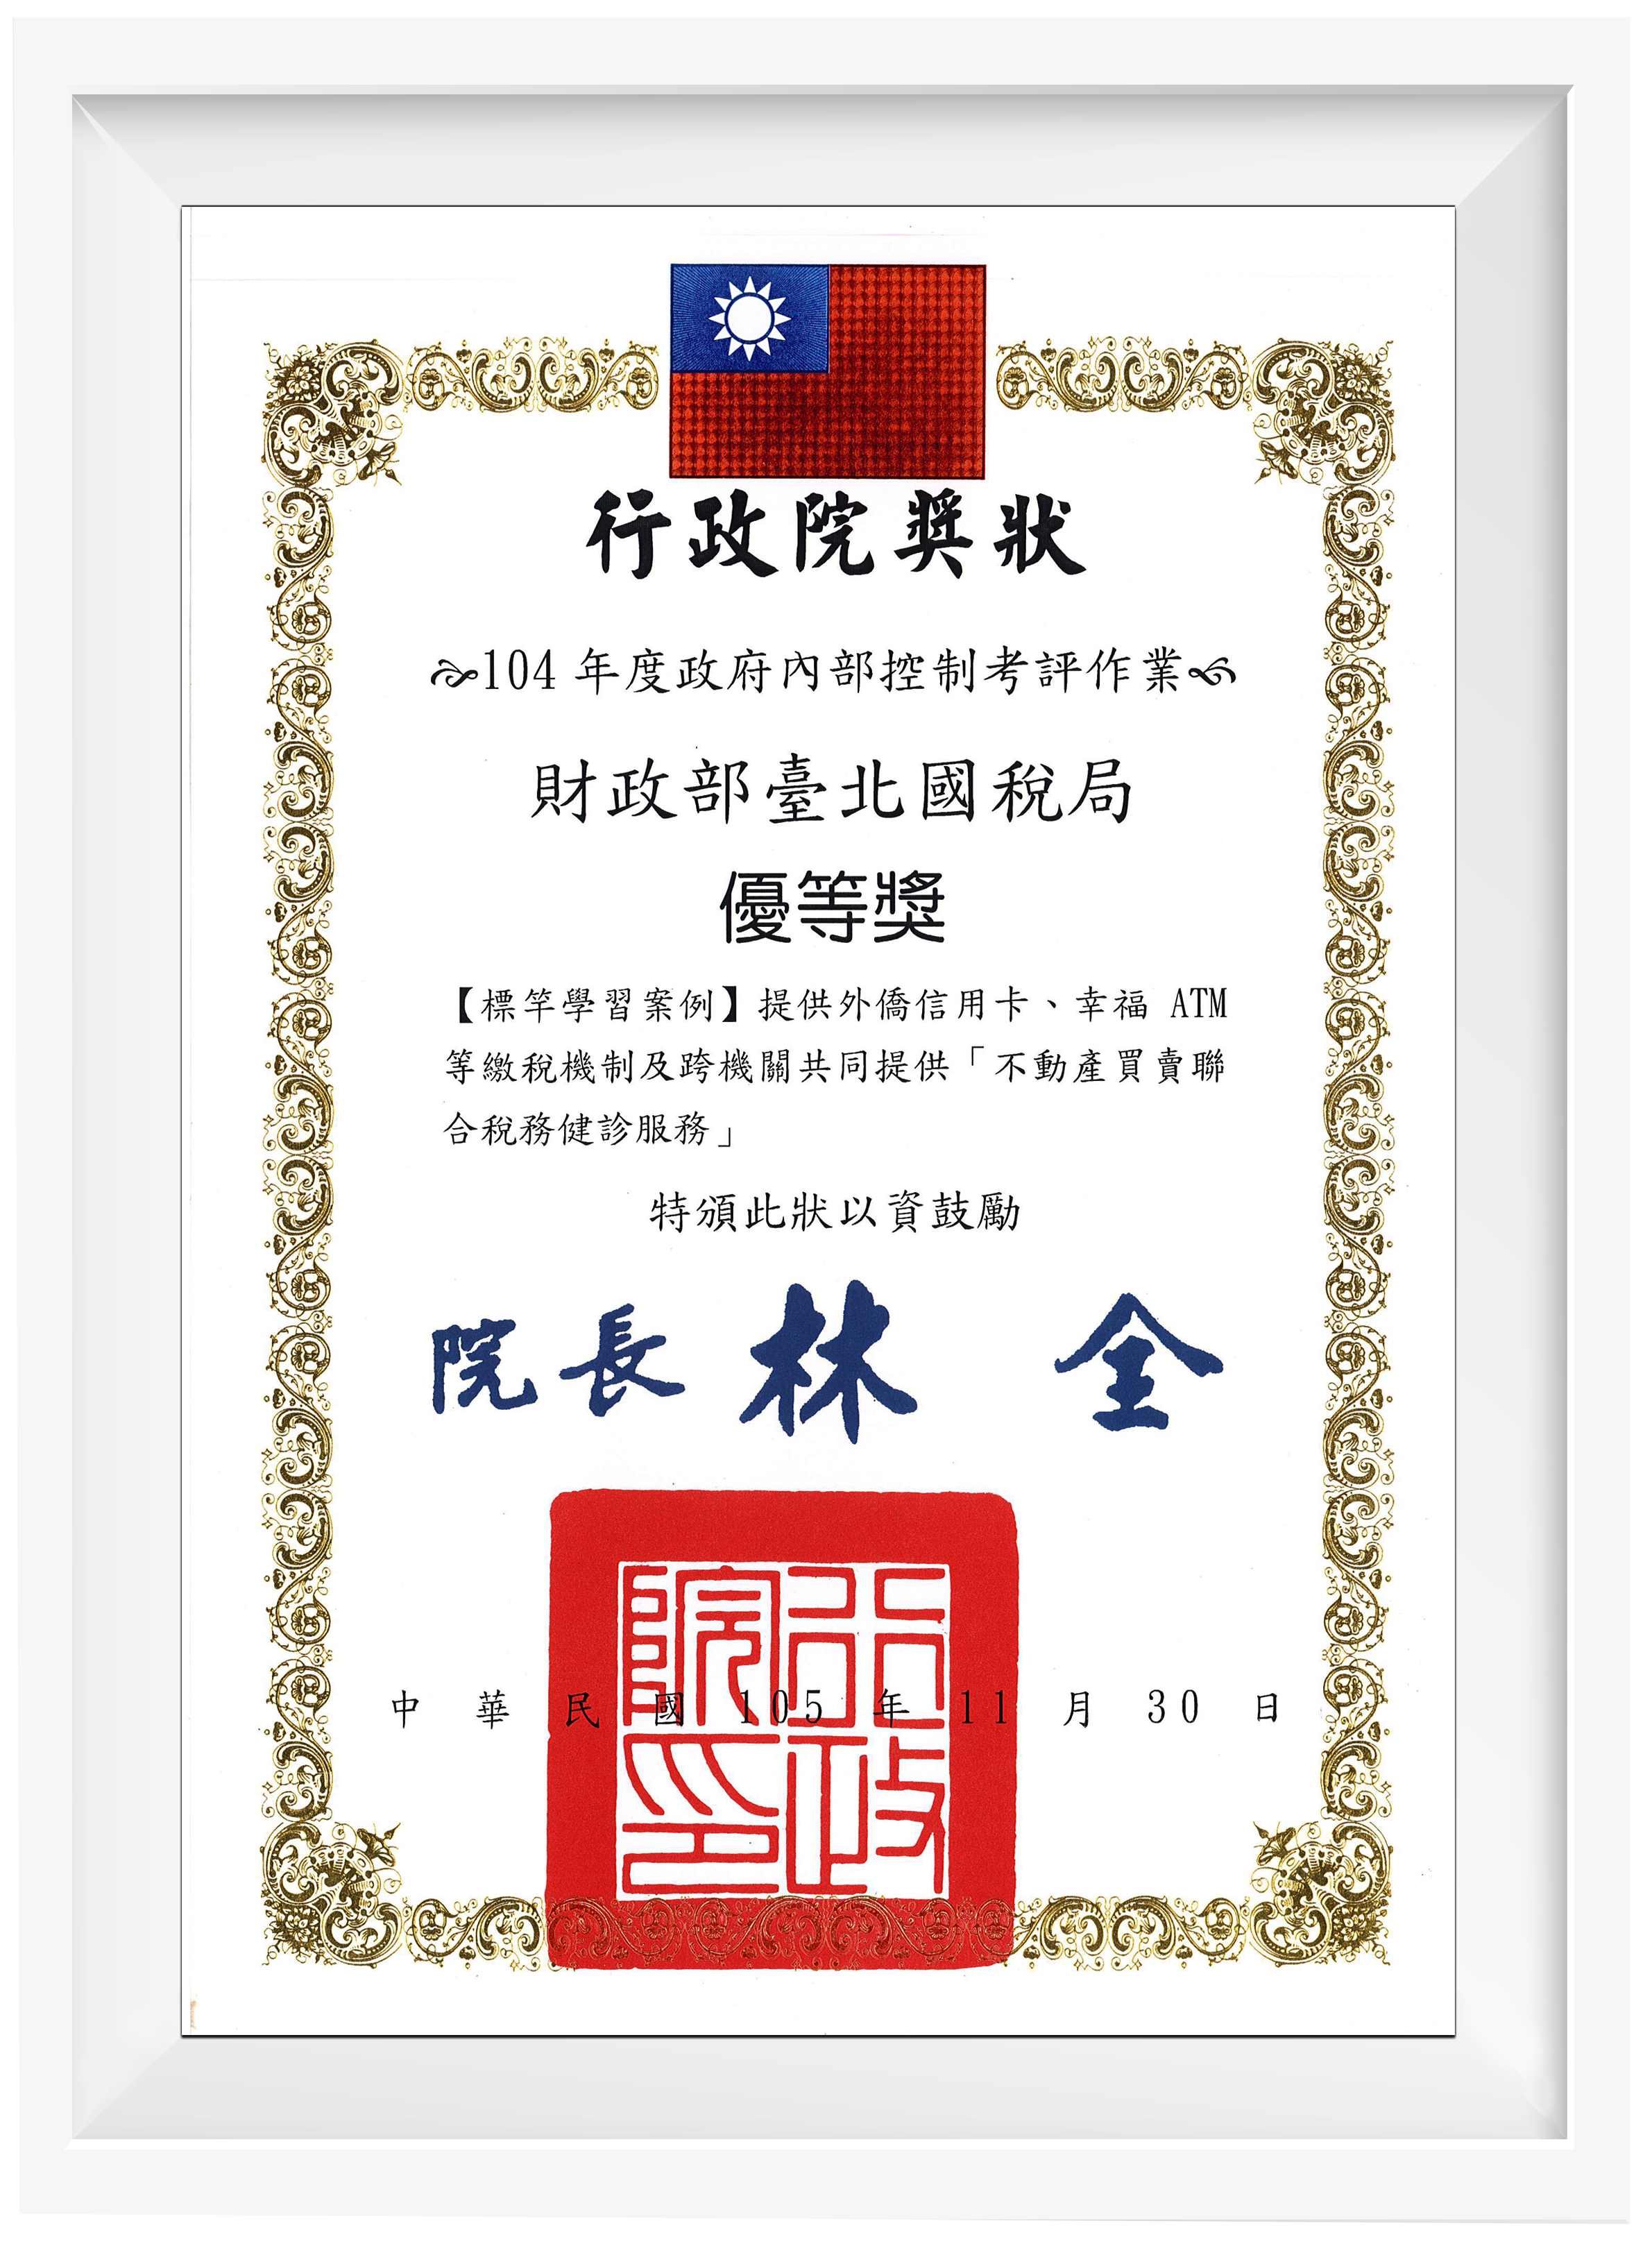 財政部臺北國稅局參加行政院104年度政府內部控制考評作業，榮獲「優等獎」。